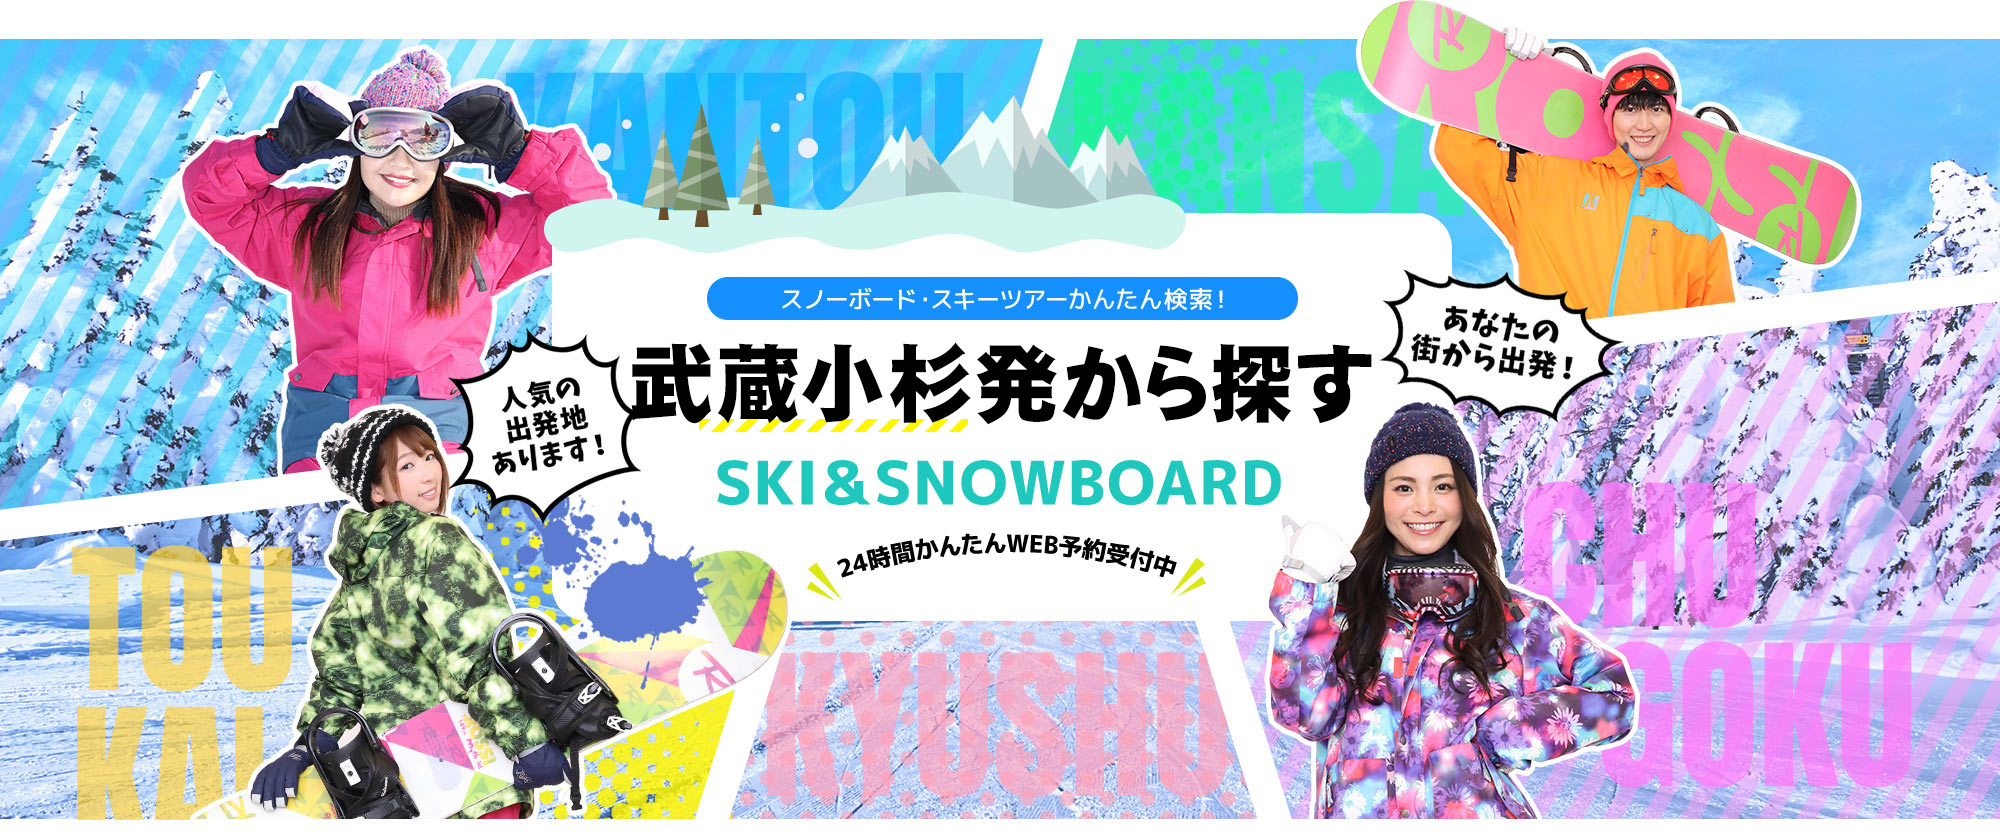 スノーボード・スキーツアーかんたん検索！ 武蔵小杉発から探す SKI&SNOWBOARD